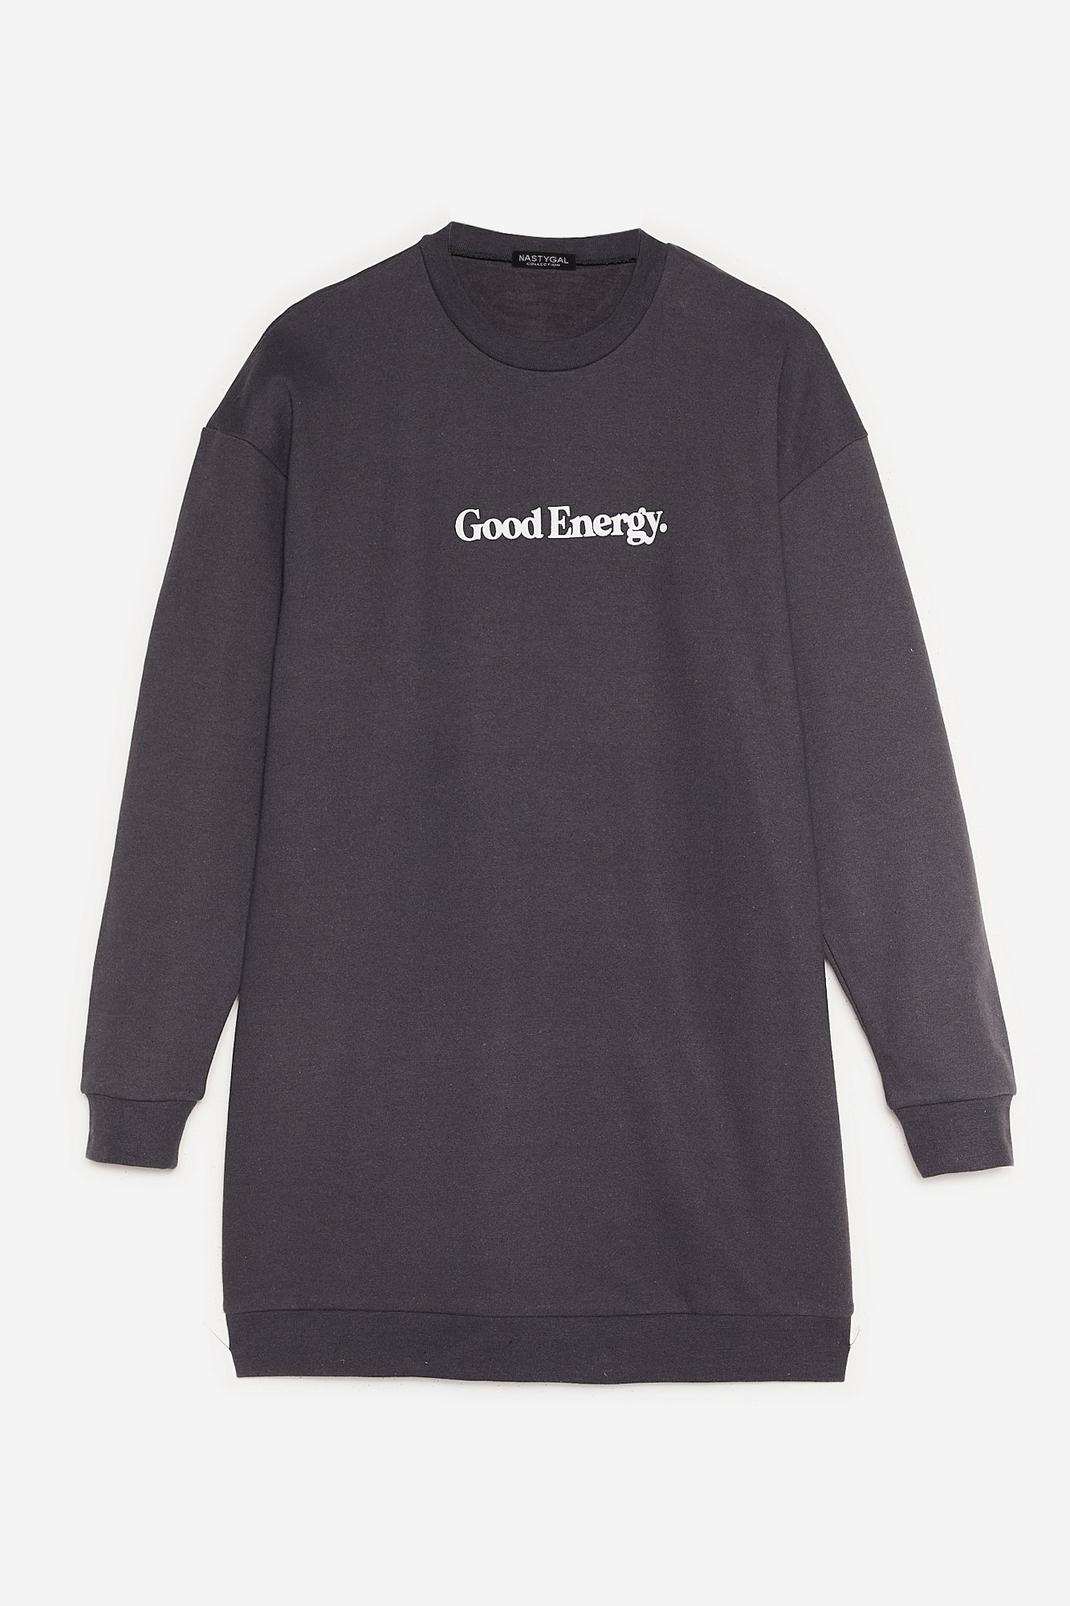 Charcoal Petite Good Energy Sweatshirt Dress image number 1